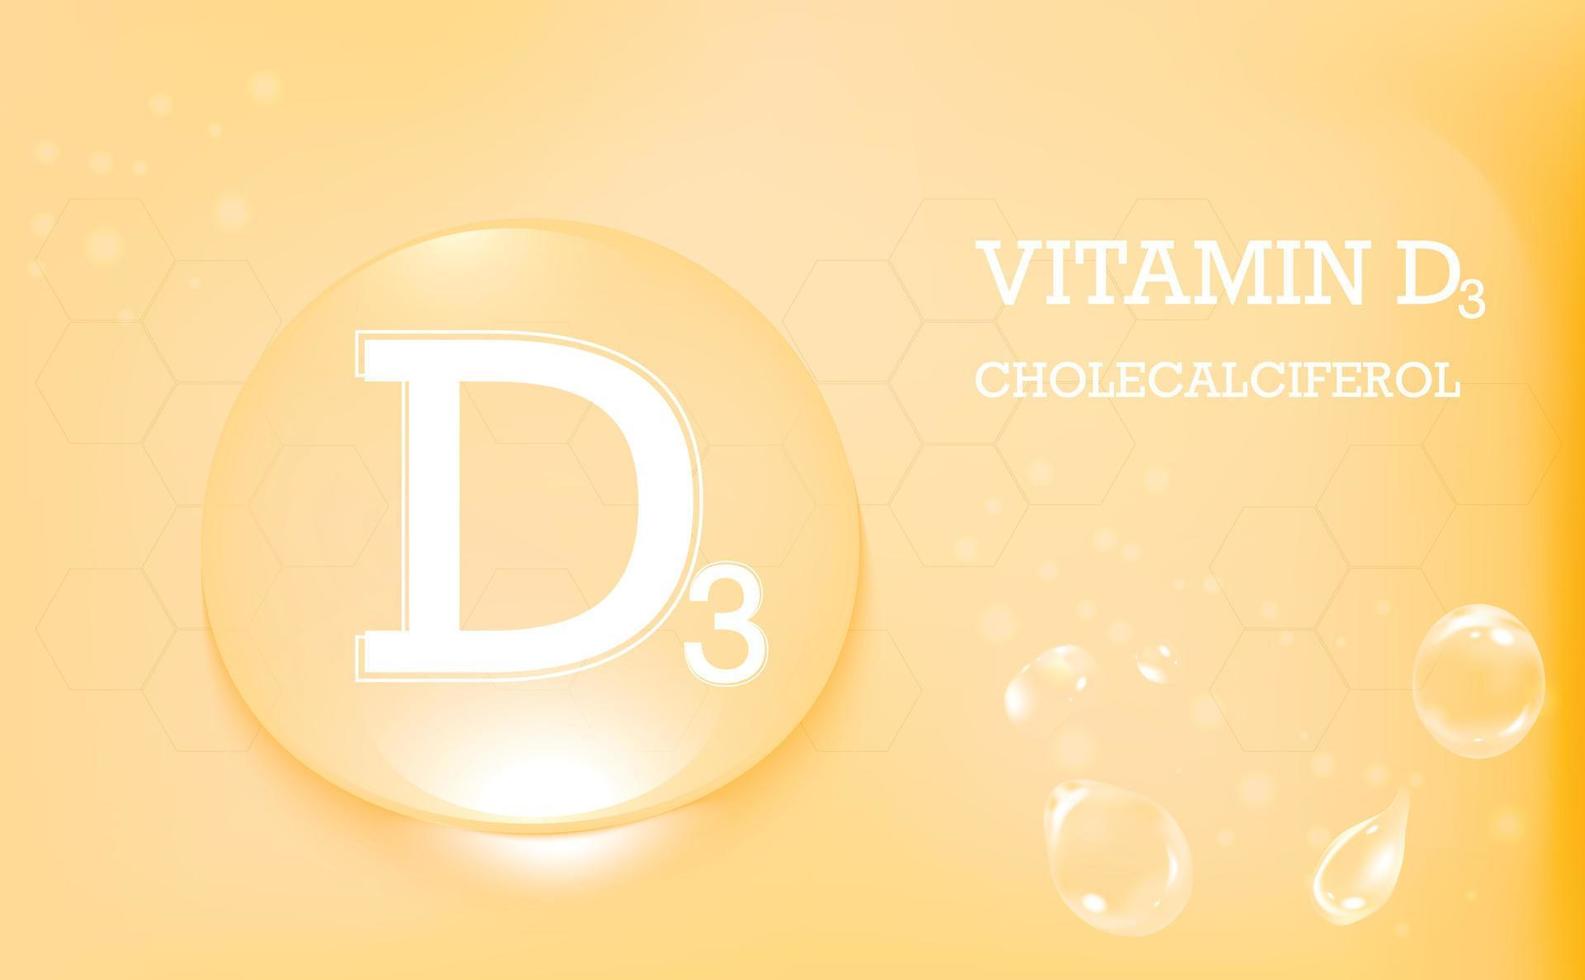 vitamine d3, cholecalciferol, waterdruppels op een oranje medische achtergrond. huidverzorging en kinderen tot twee jaar. vector illustratie